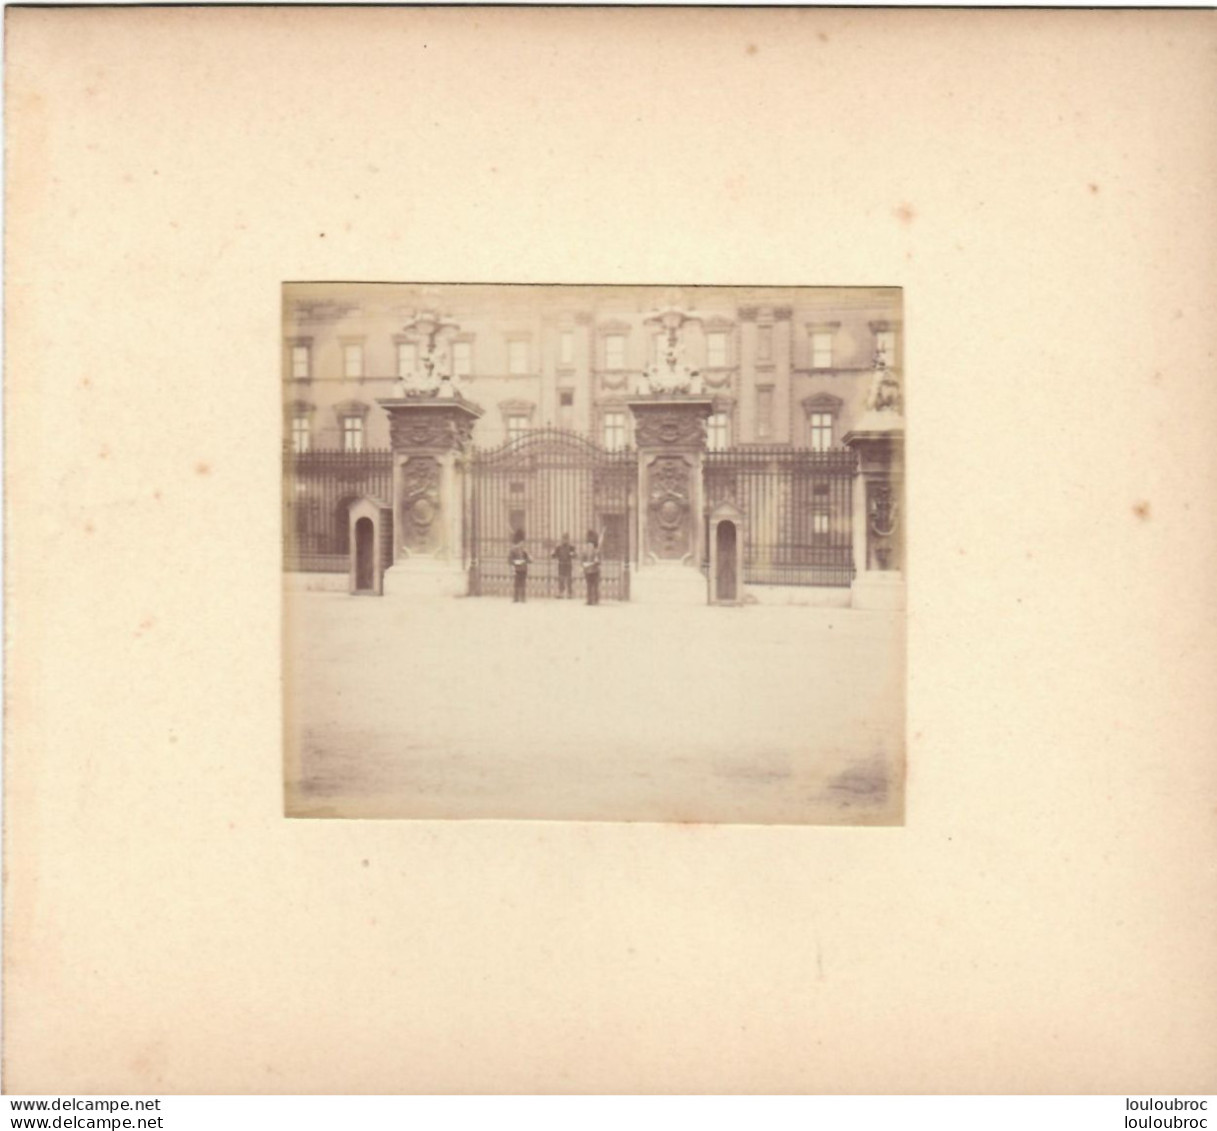 LONDRES PALAIS DE BUCKINGHAM FIN 19em PHOTO ORIGINALE 8x7CM COLLEE SUR CARTON DE 18x13cm - Old (before 1900)